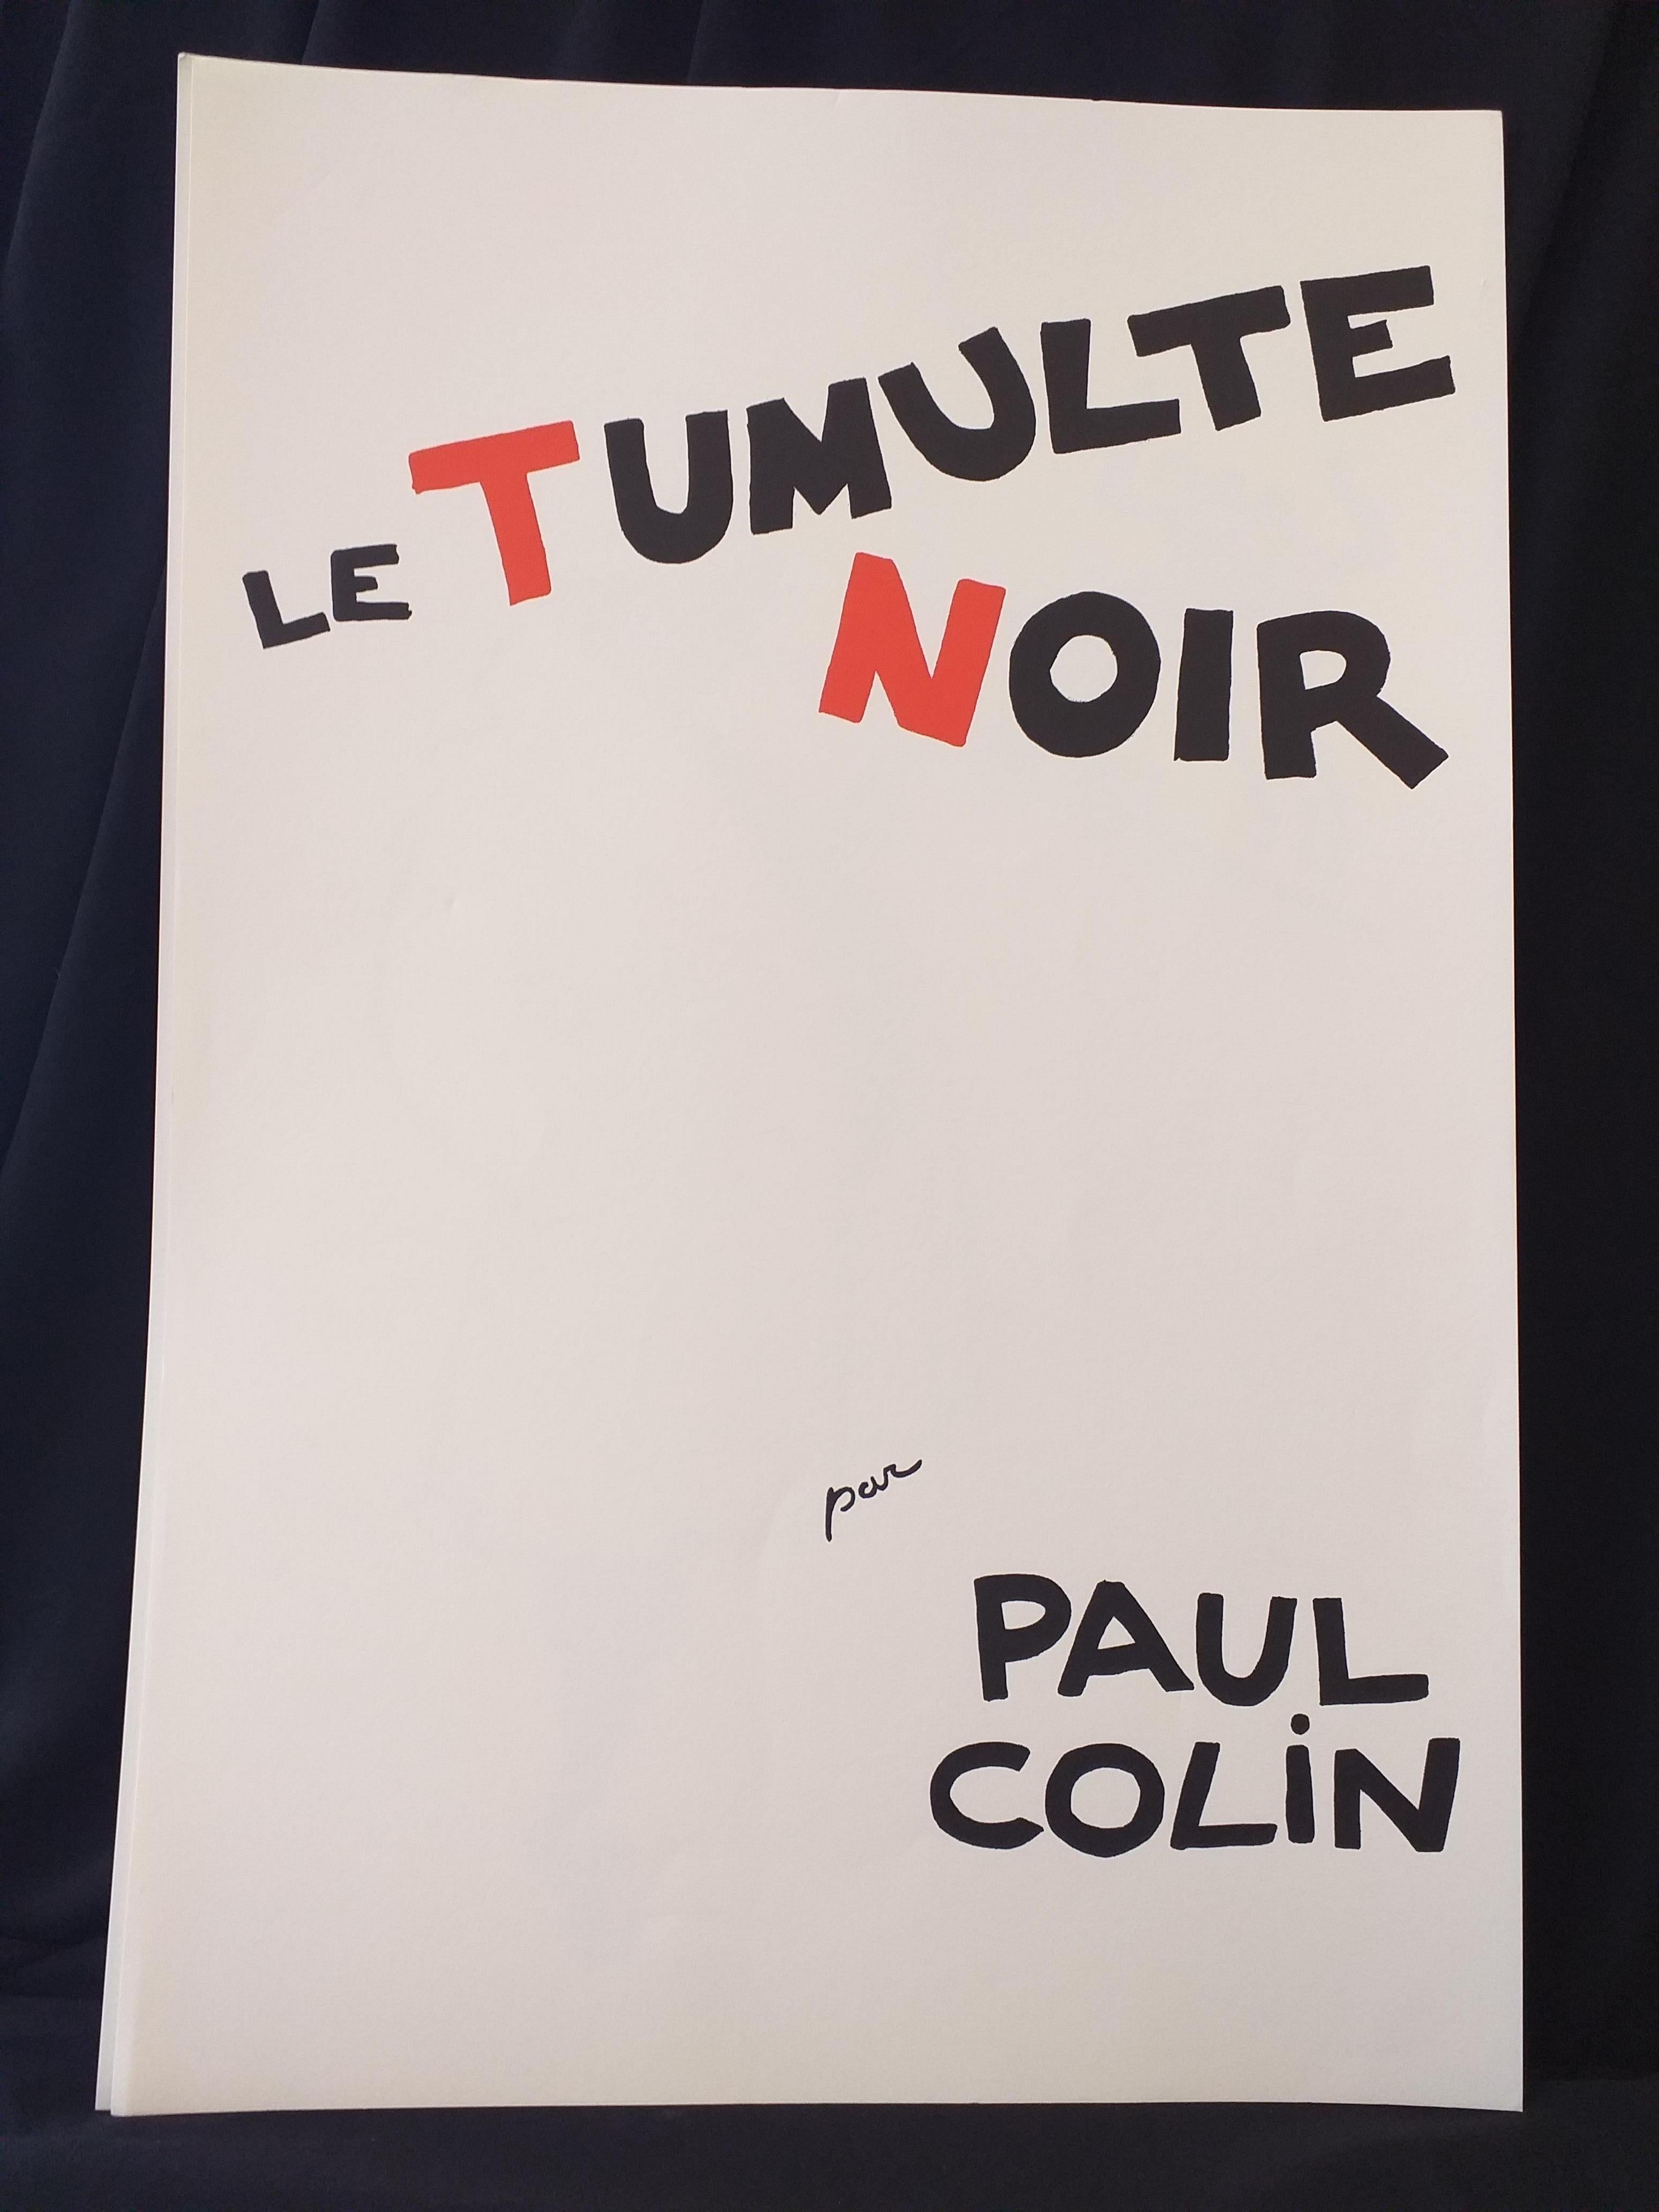 Paul Colin Poster Artist Le Tumulte Noir 7 In Good Condition For Sale In Saint ouen, FR